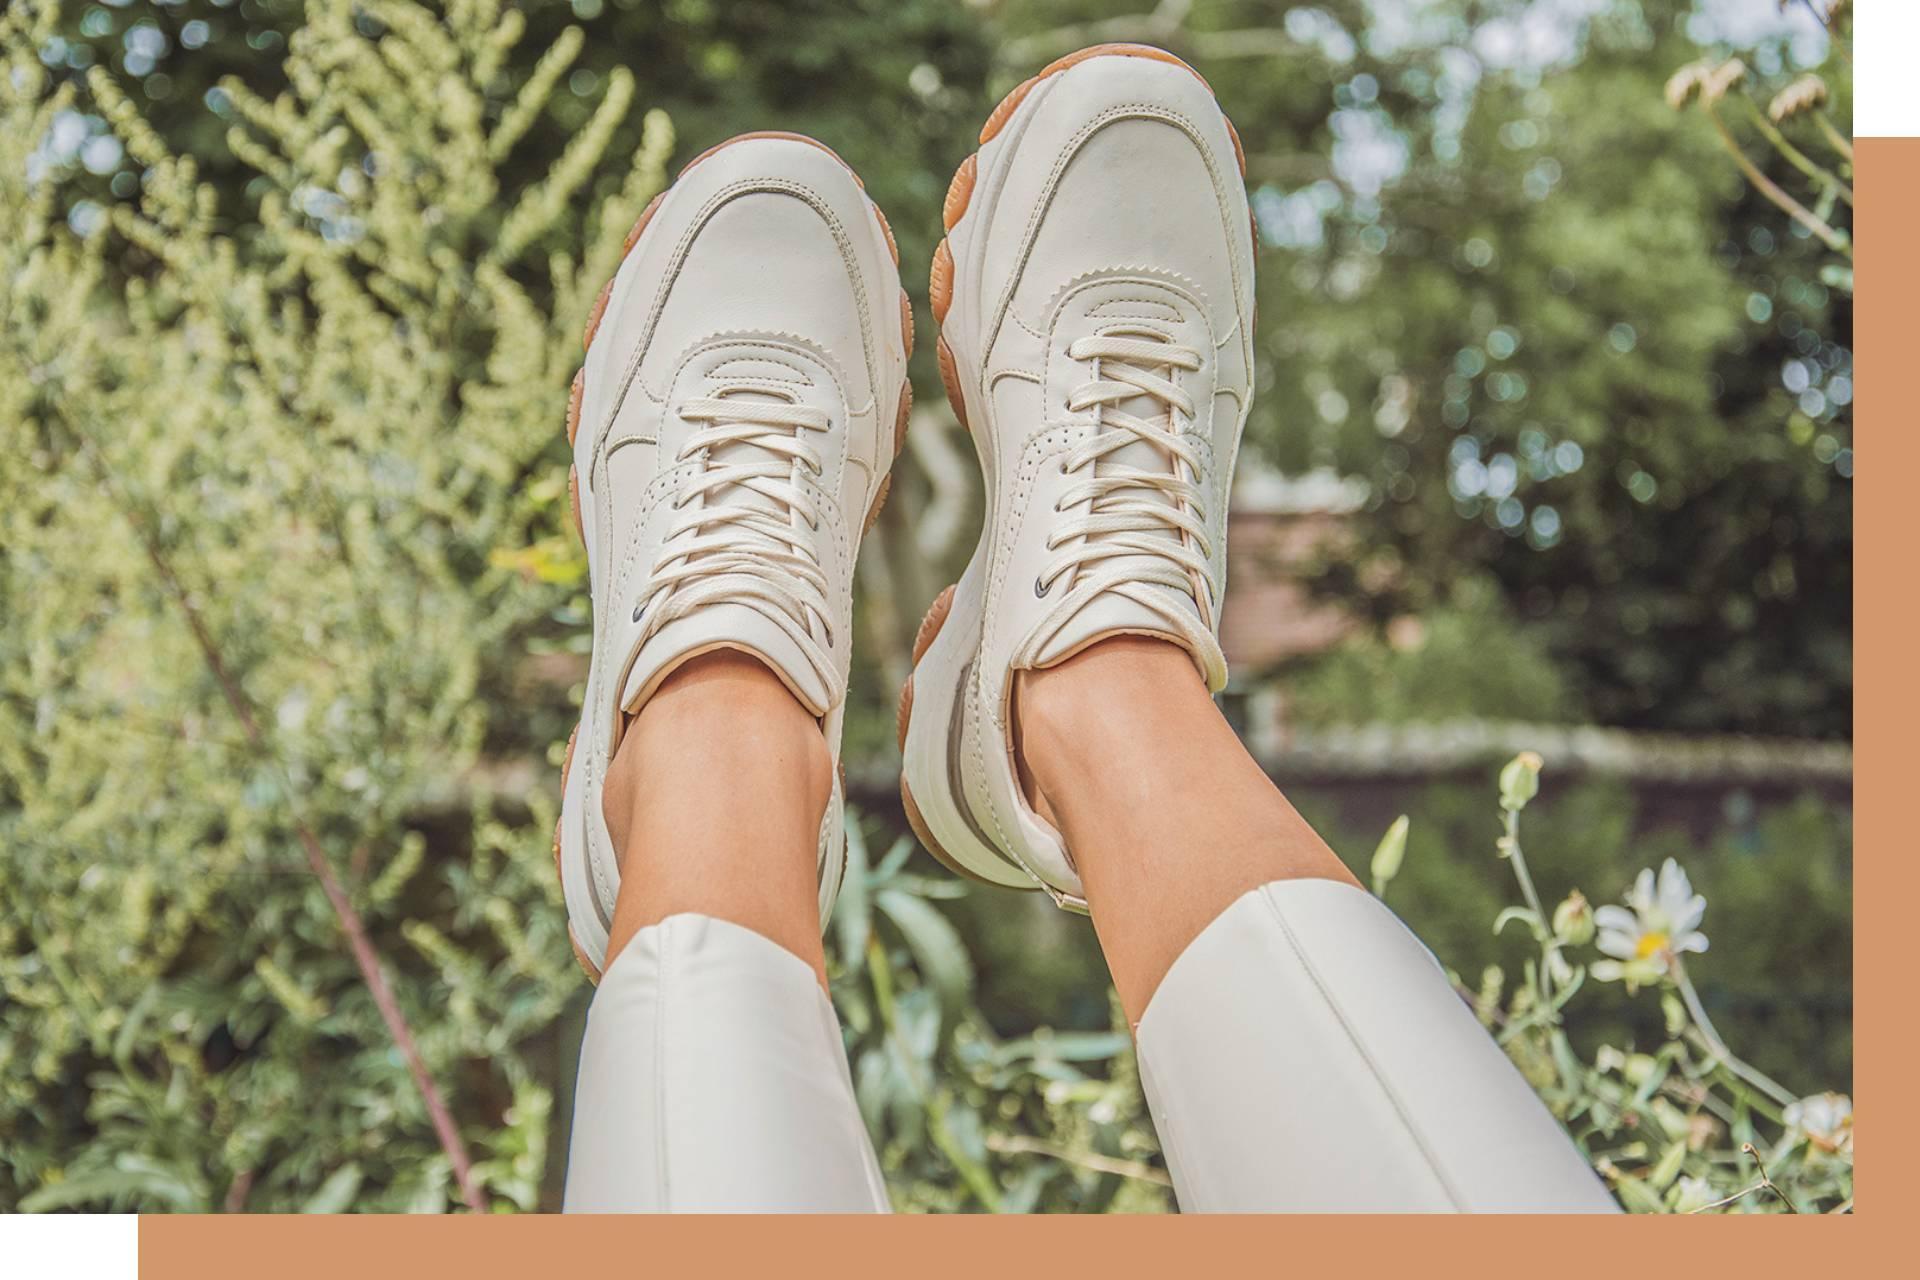 kreupel bloeden investering Smalle voeten: de beste schoenmerken voor jou | SHUZ Blog